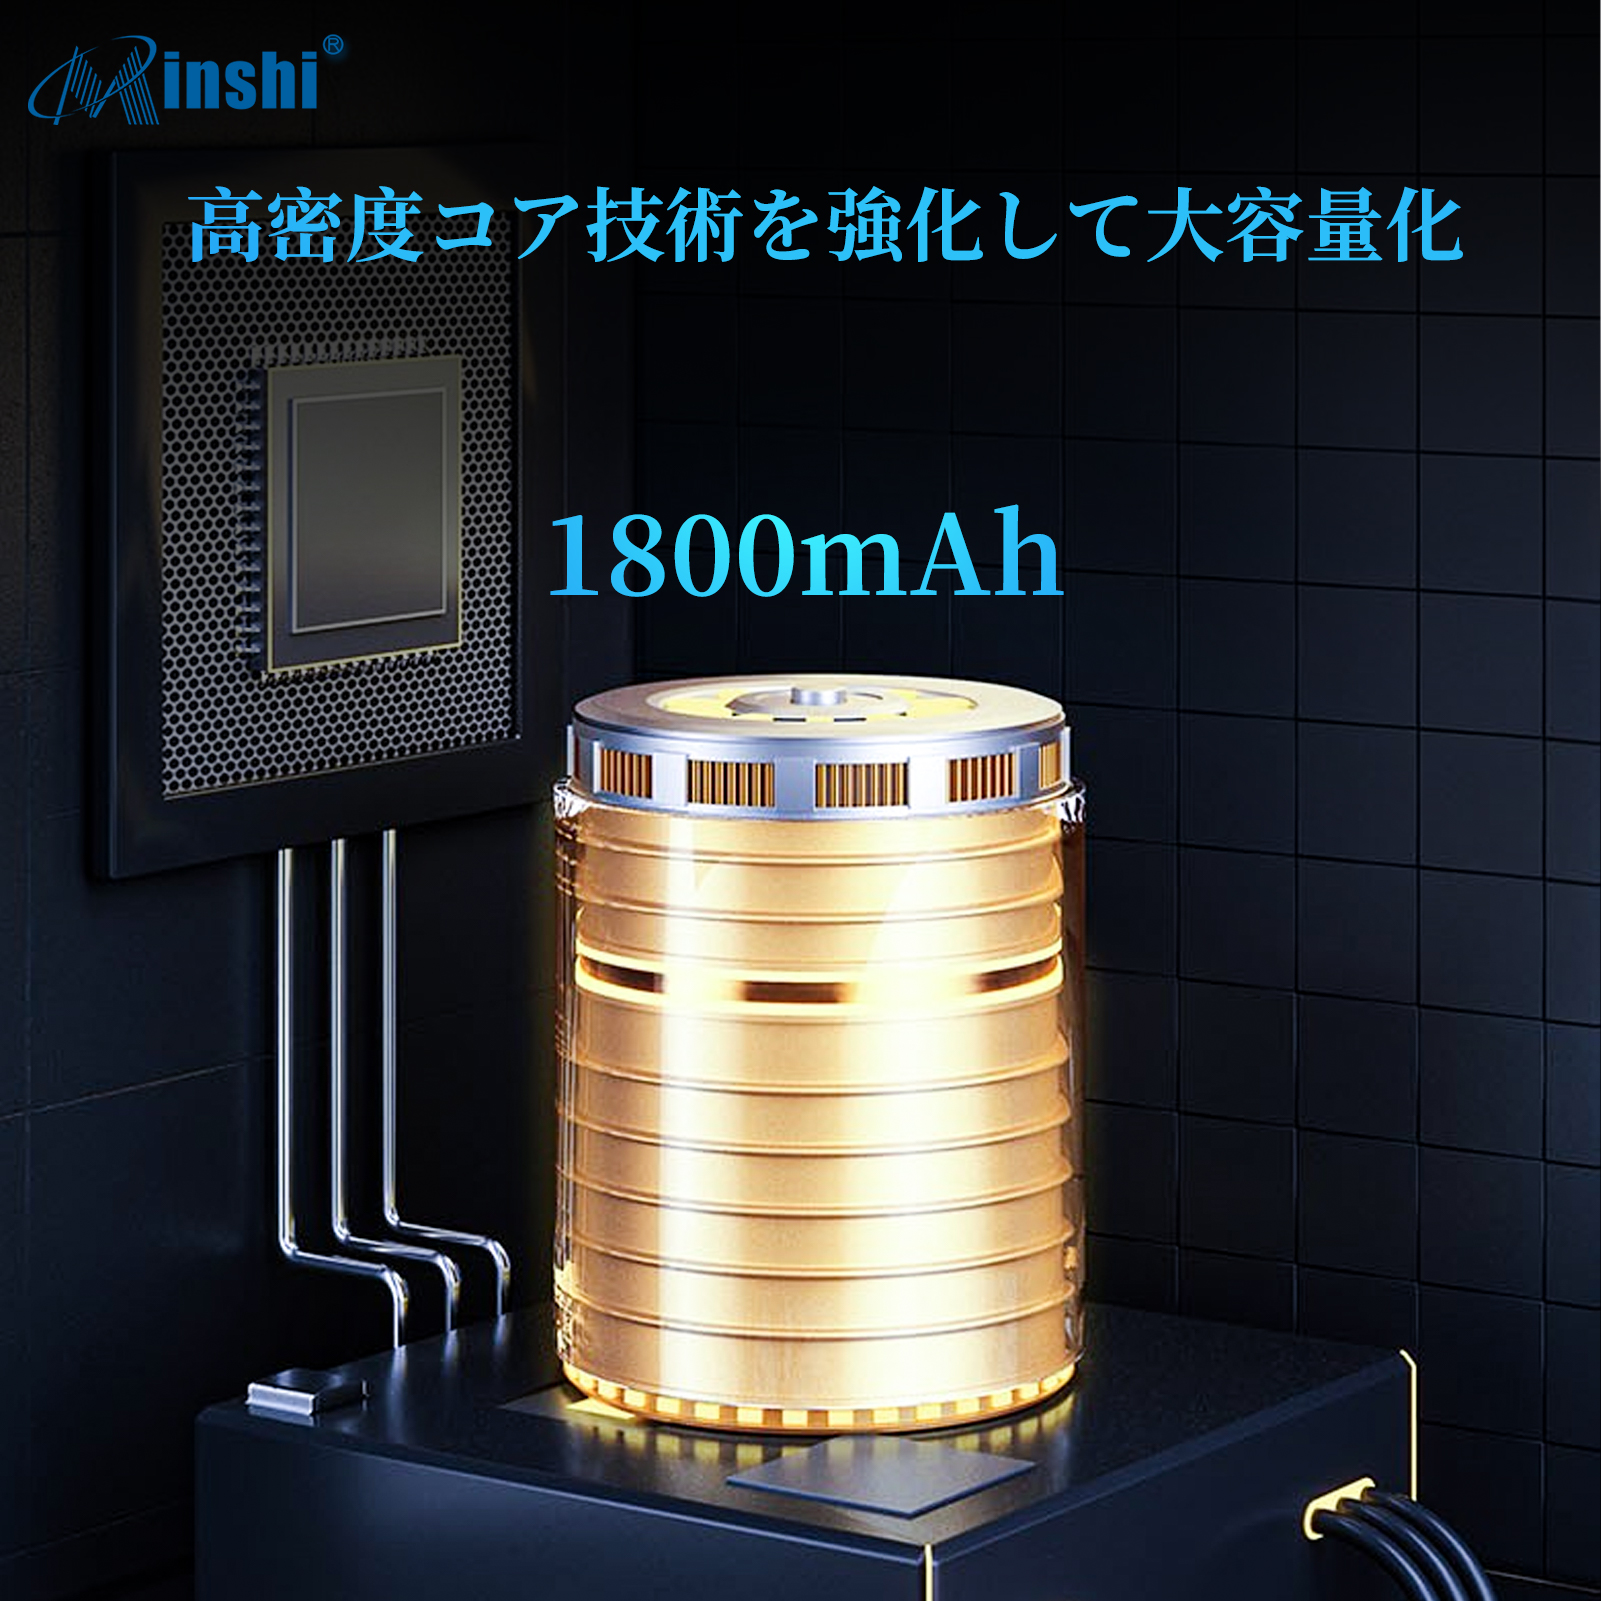  minshi PANASONIC P-01J 対応 互換バッテリー 1800mAh PSE認定済 高品質互換バッテリー